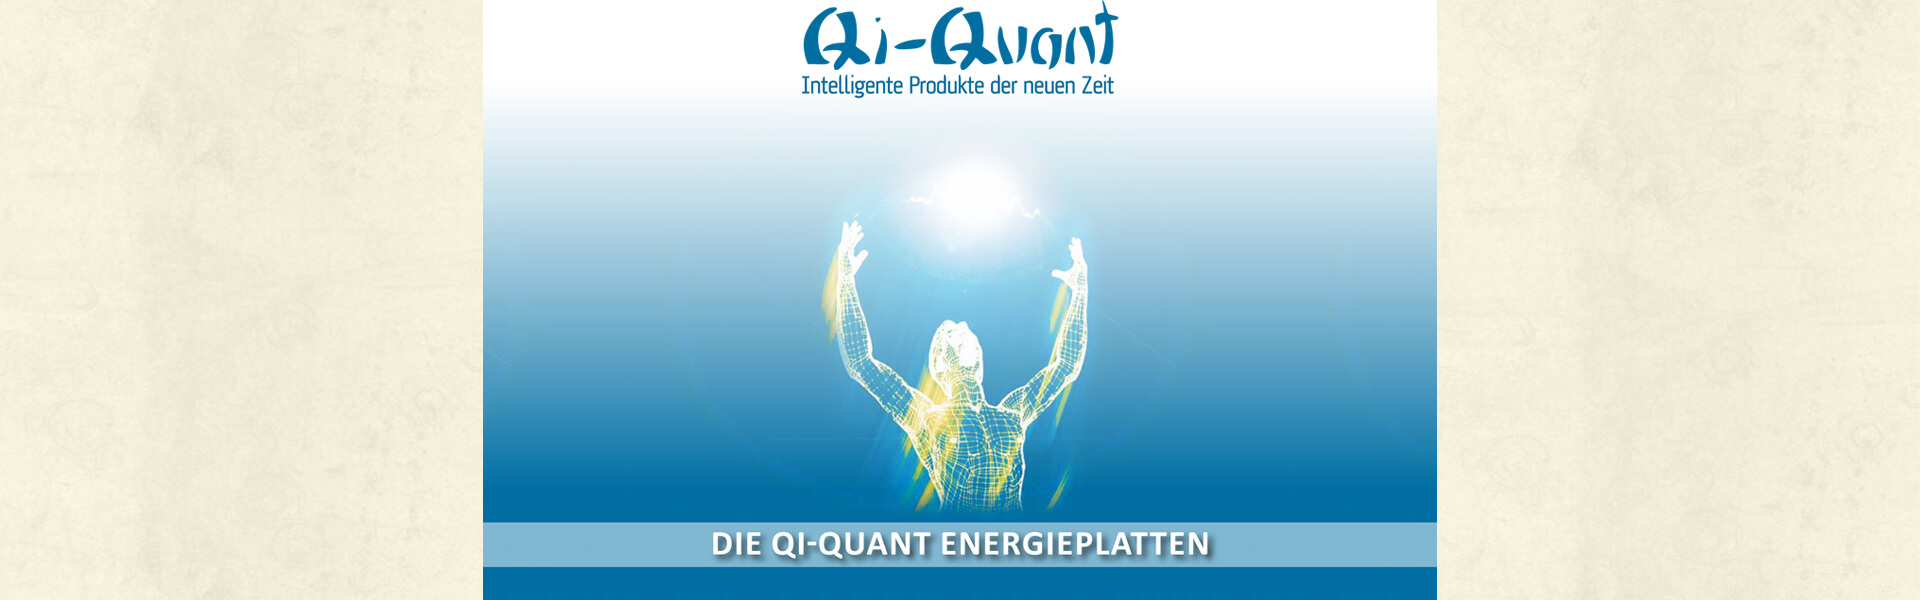 Slider09_Qi-Quant_Intelligente_Produkte_der_neuen_Zeit_Made_in_Austria